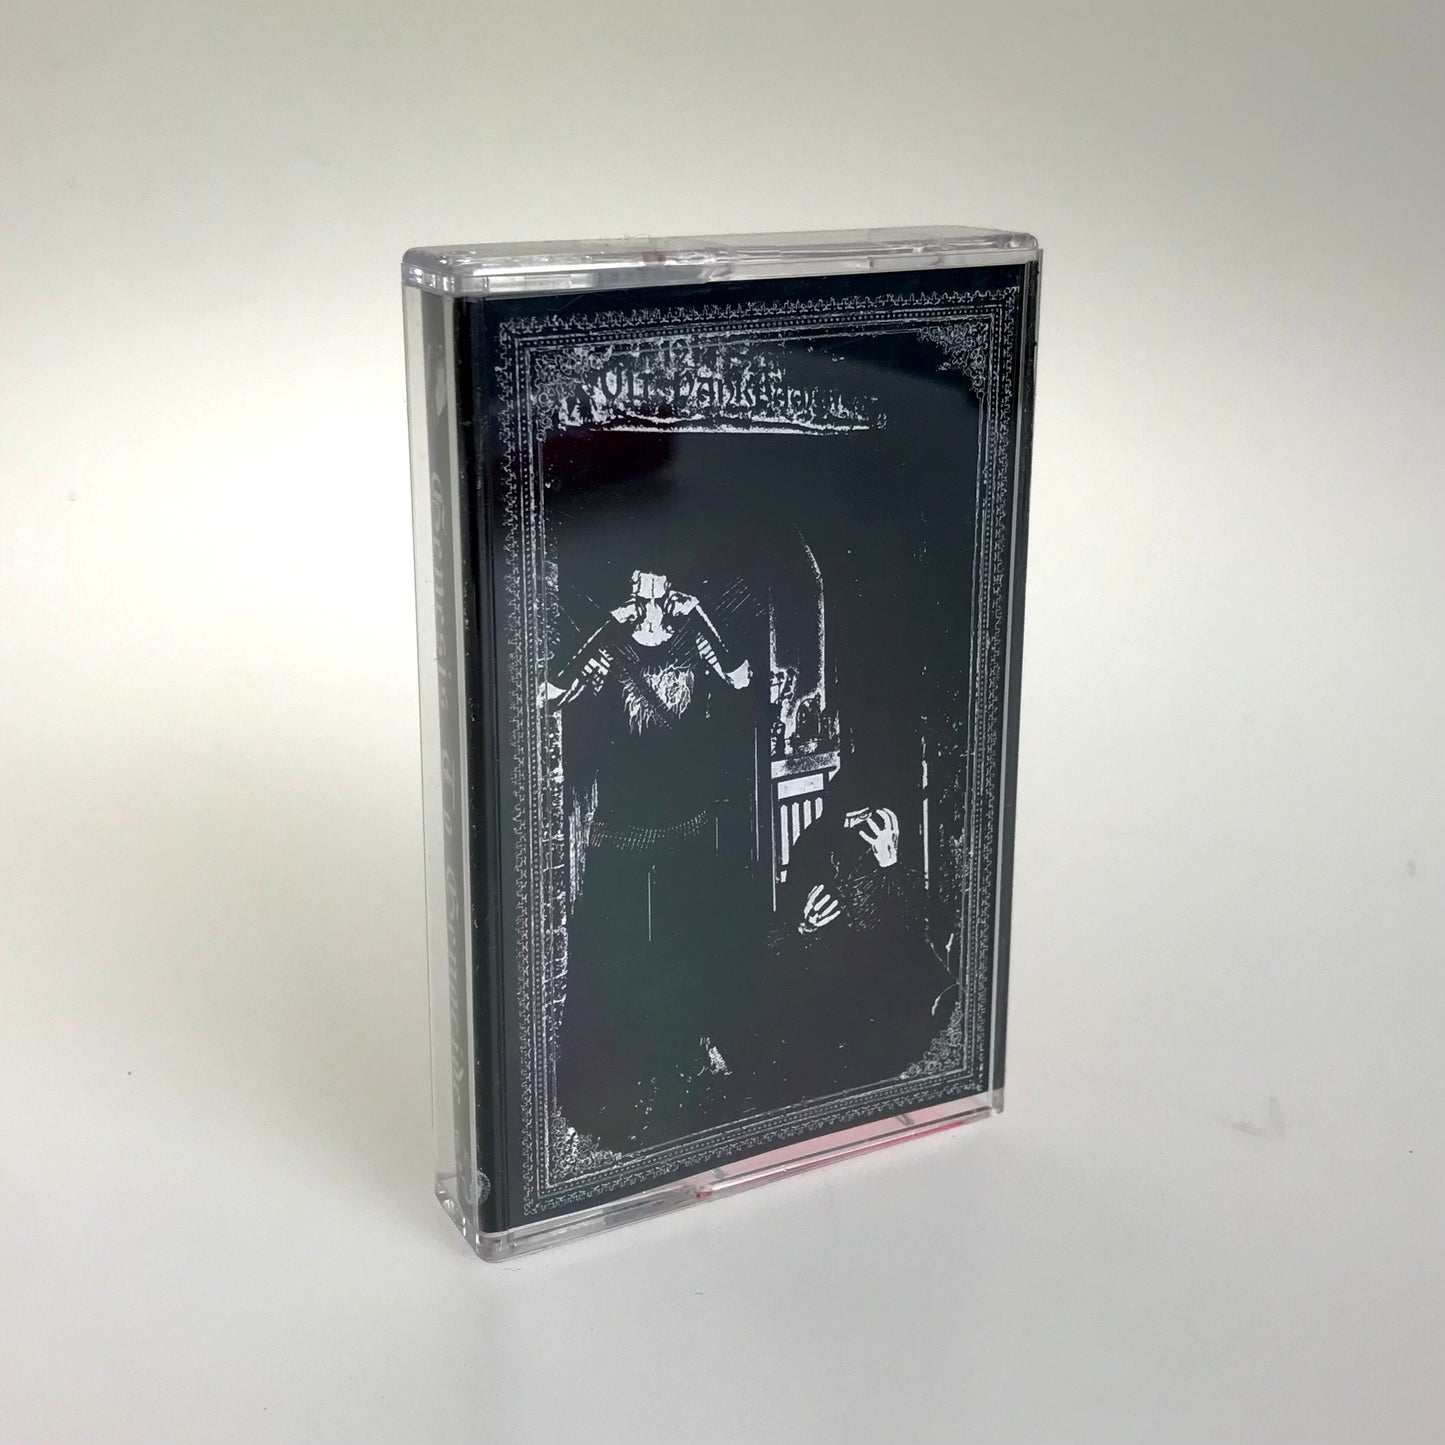 RITTERSBLUT - Genesis To Genocide cassette